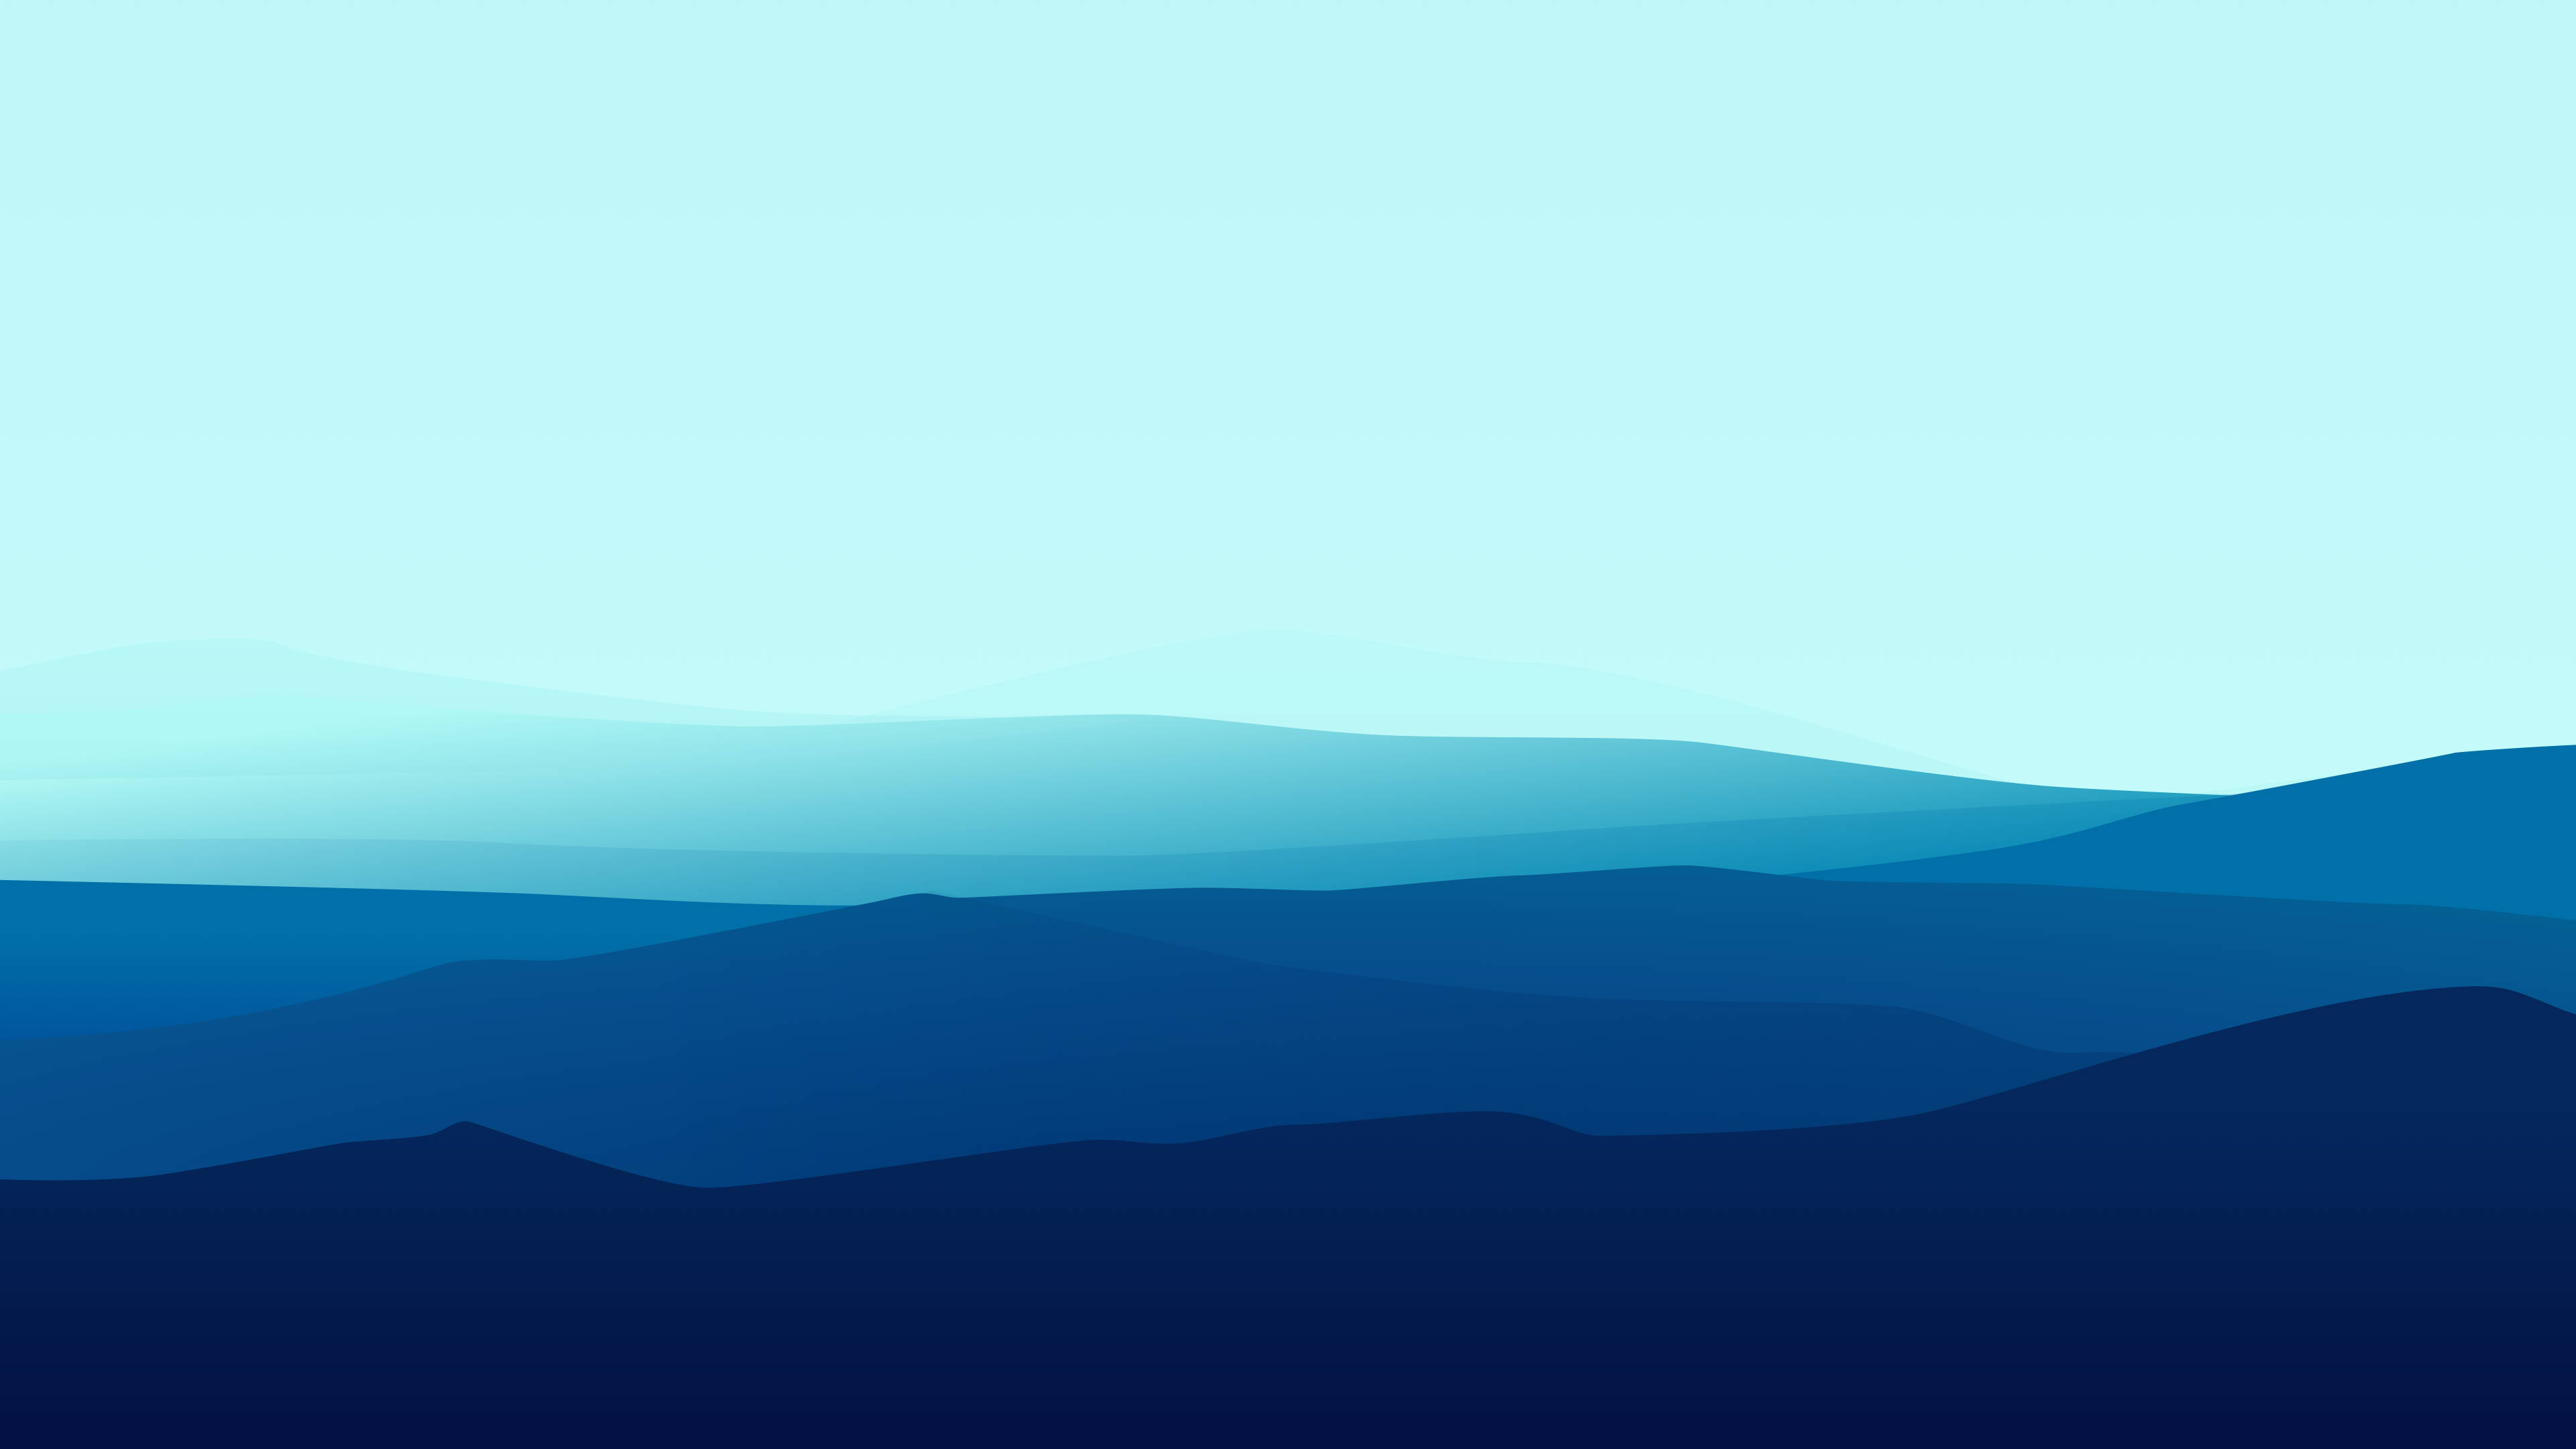 эстетичный минимализм голубых гор